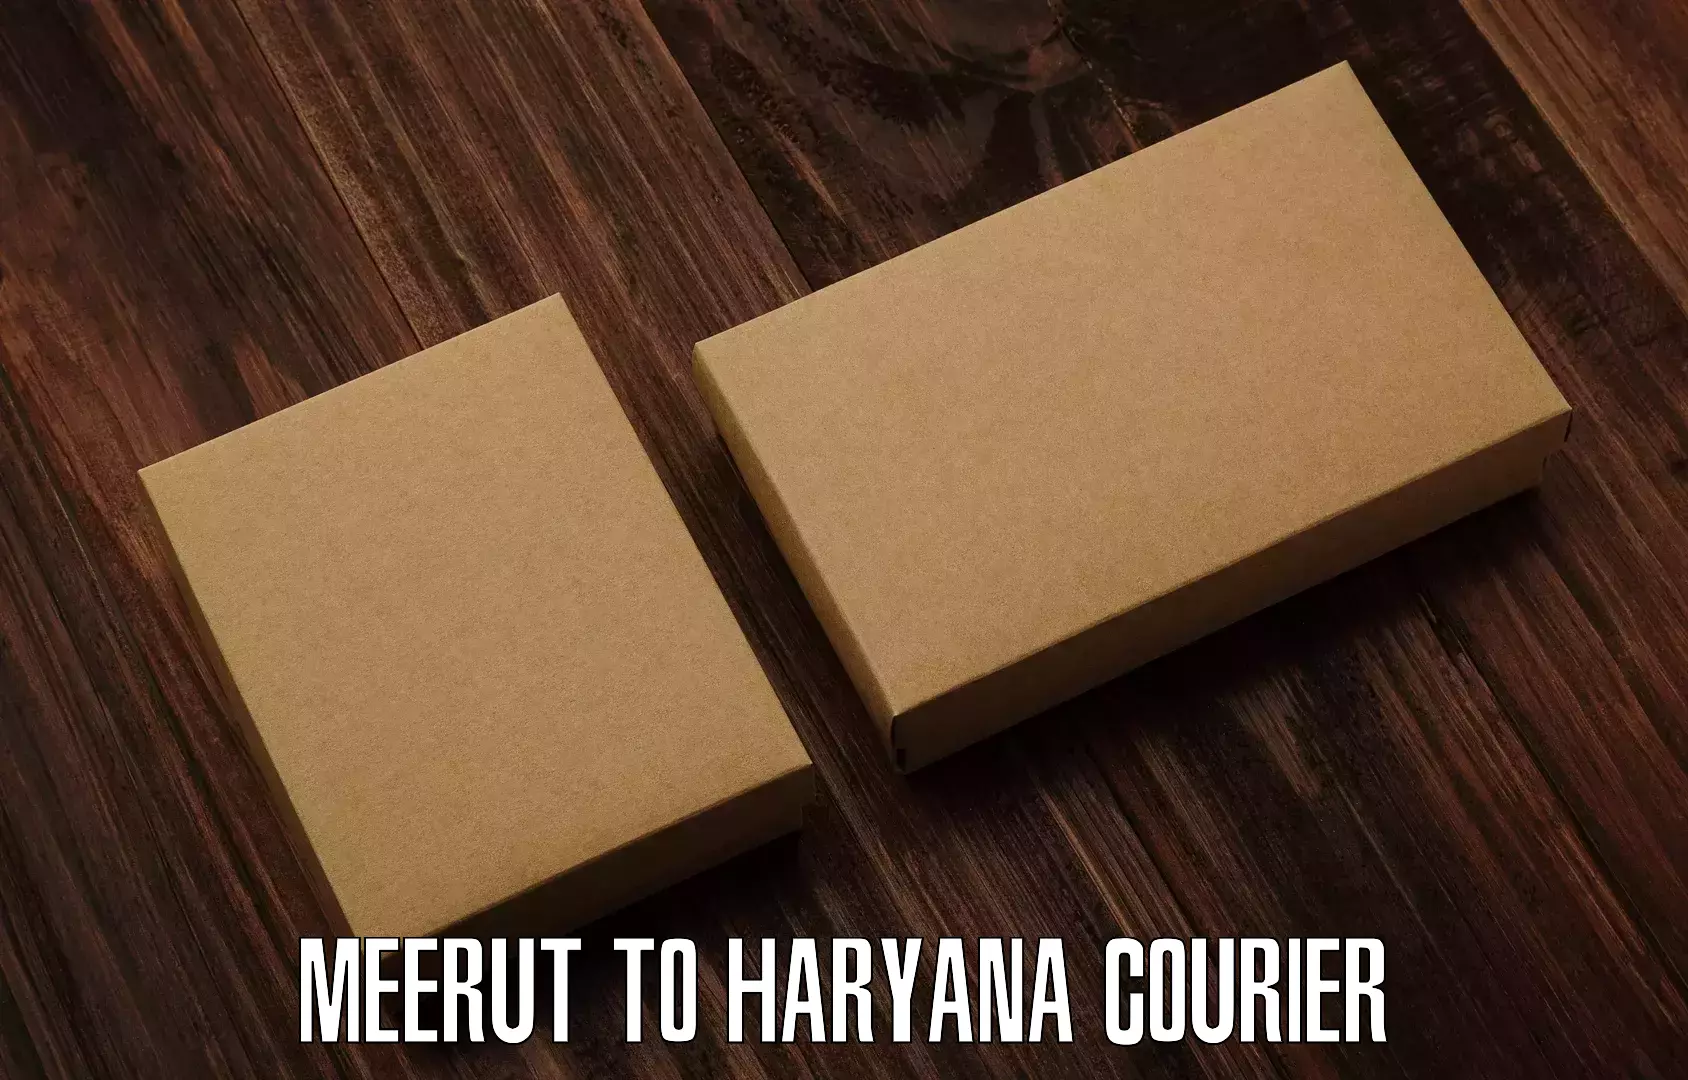 Efficient parcel transport Meerut to Gurugram